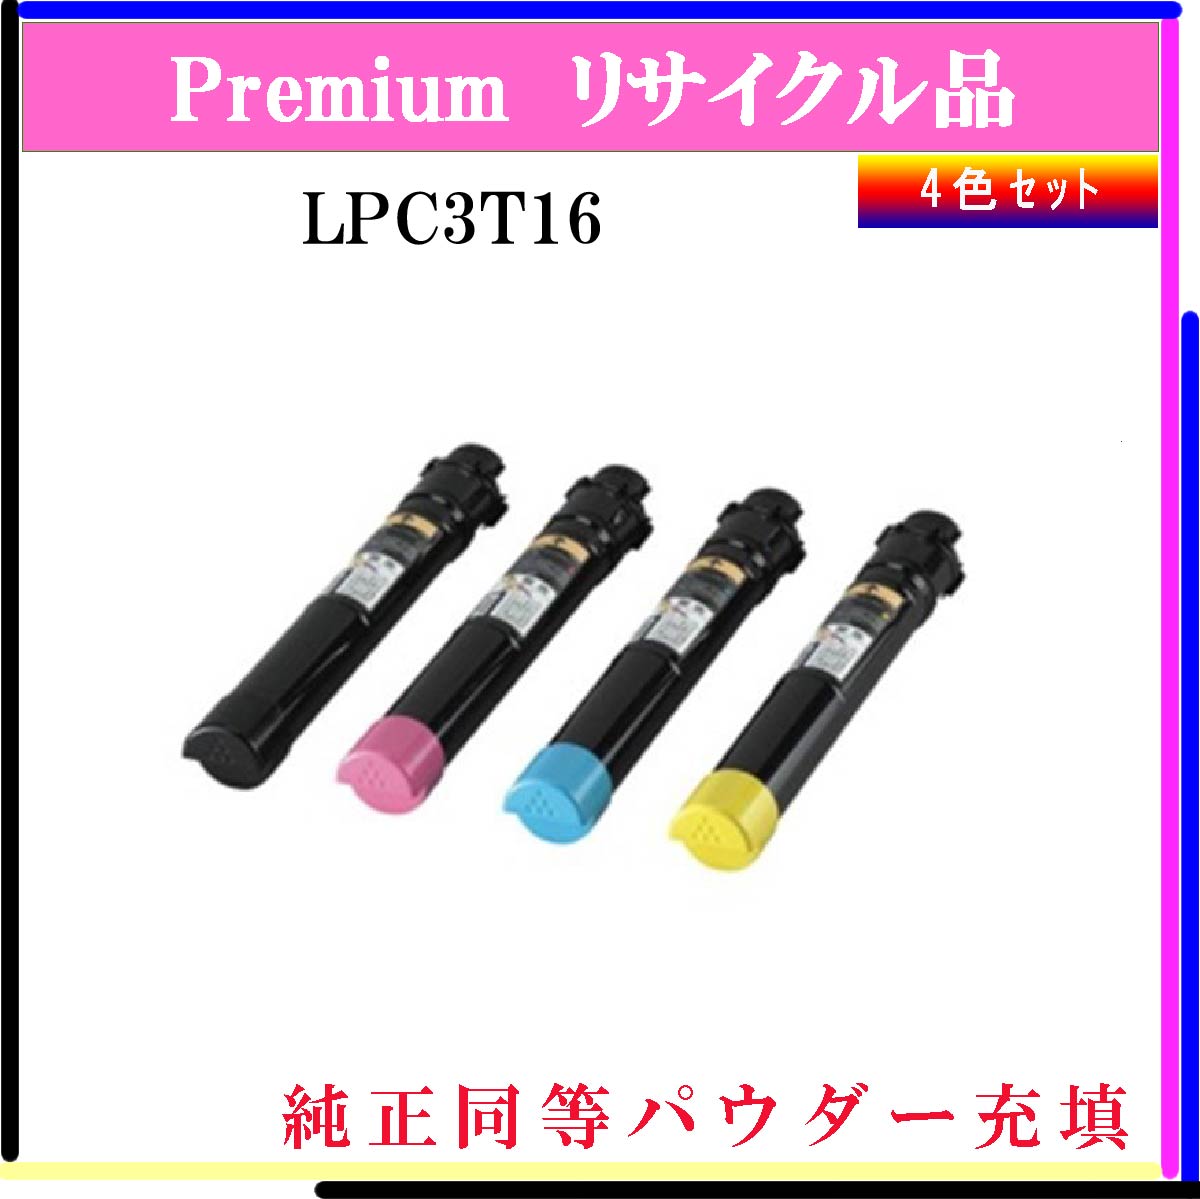 LPC3T16 (4色ｾｯﾄ) (純正同等ﾊﾟｳﾀﾞｰ)